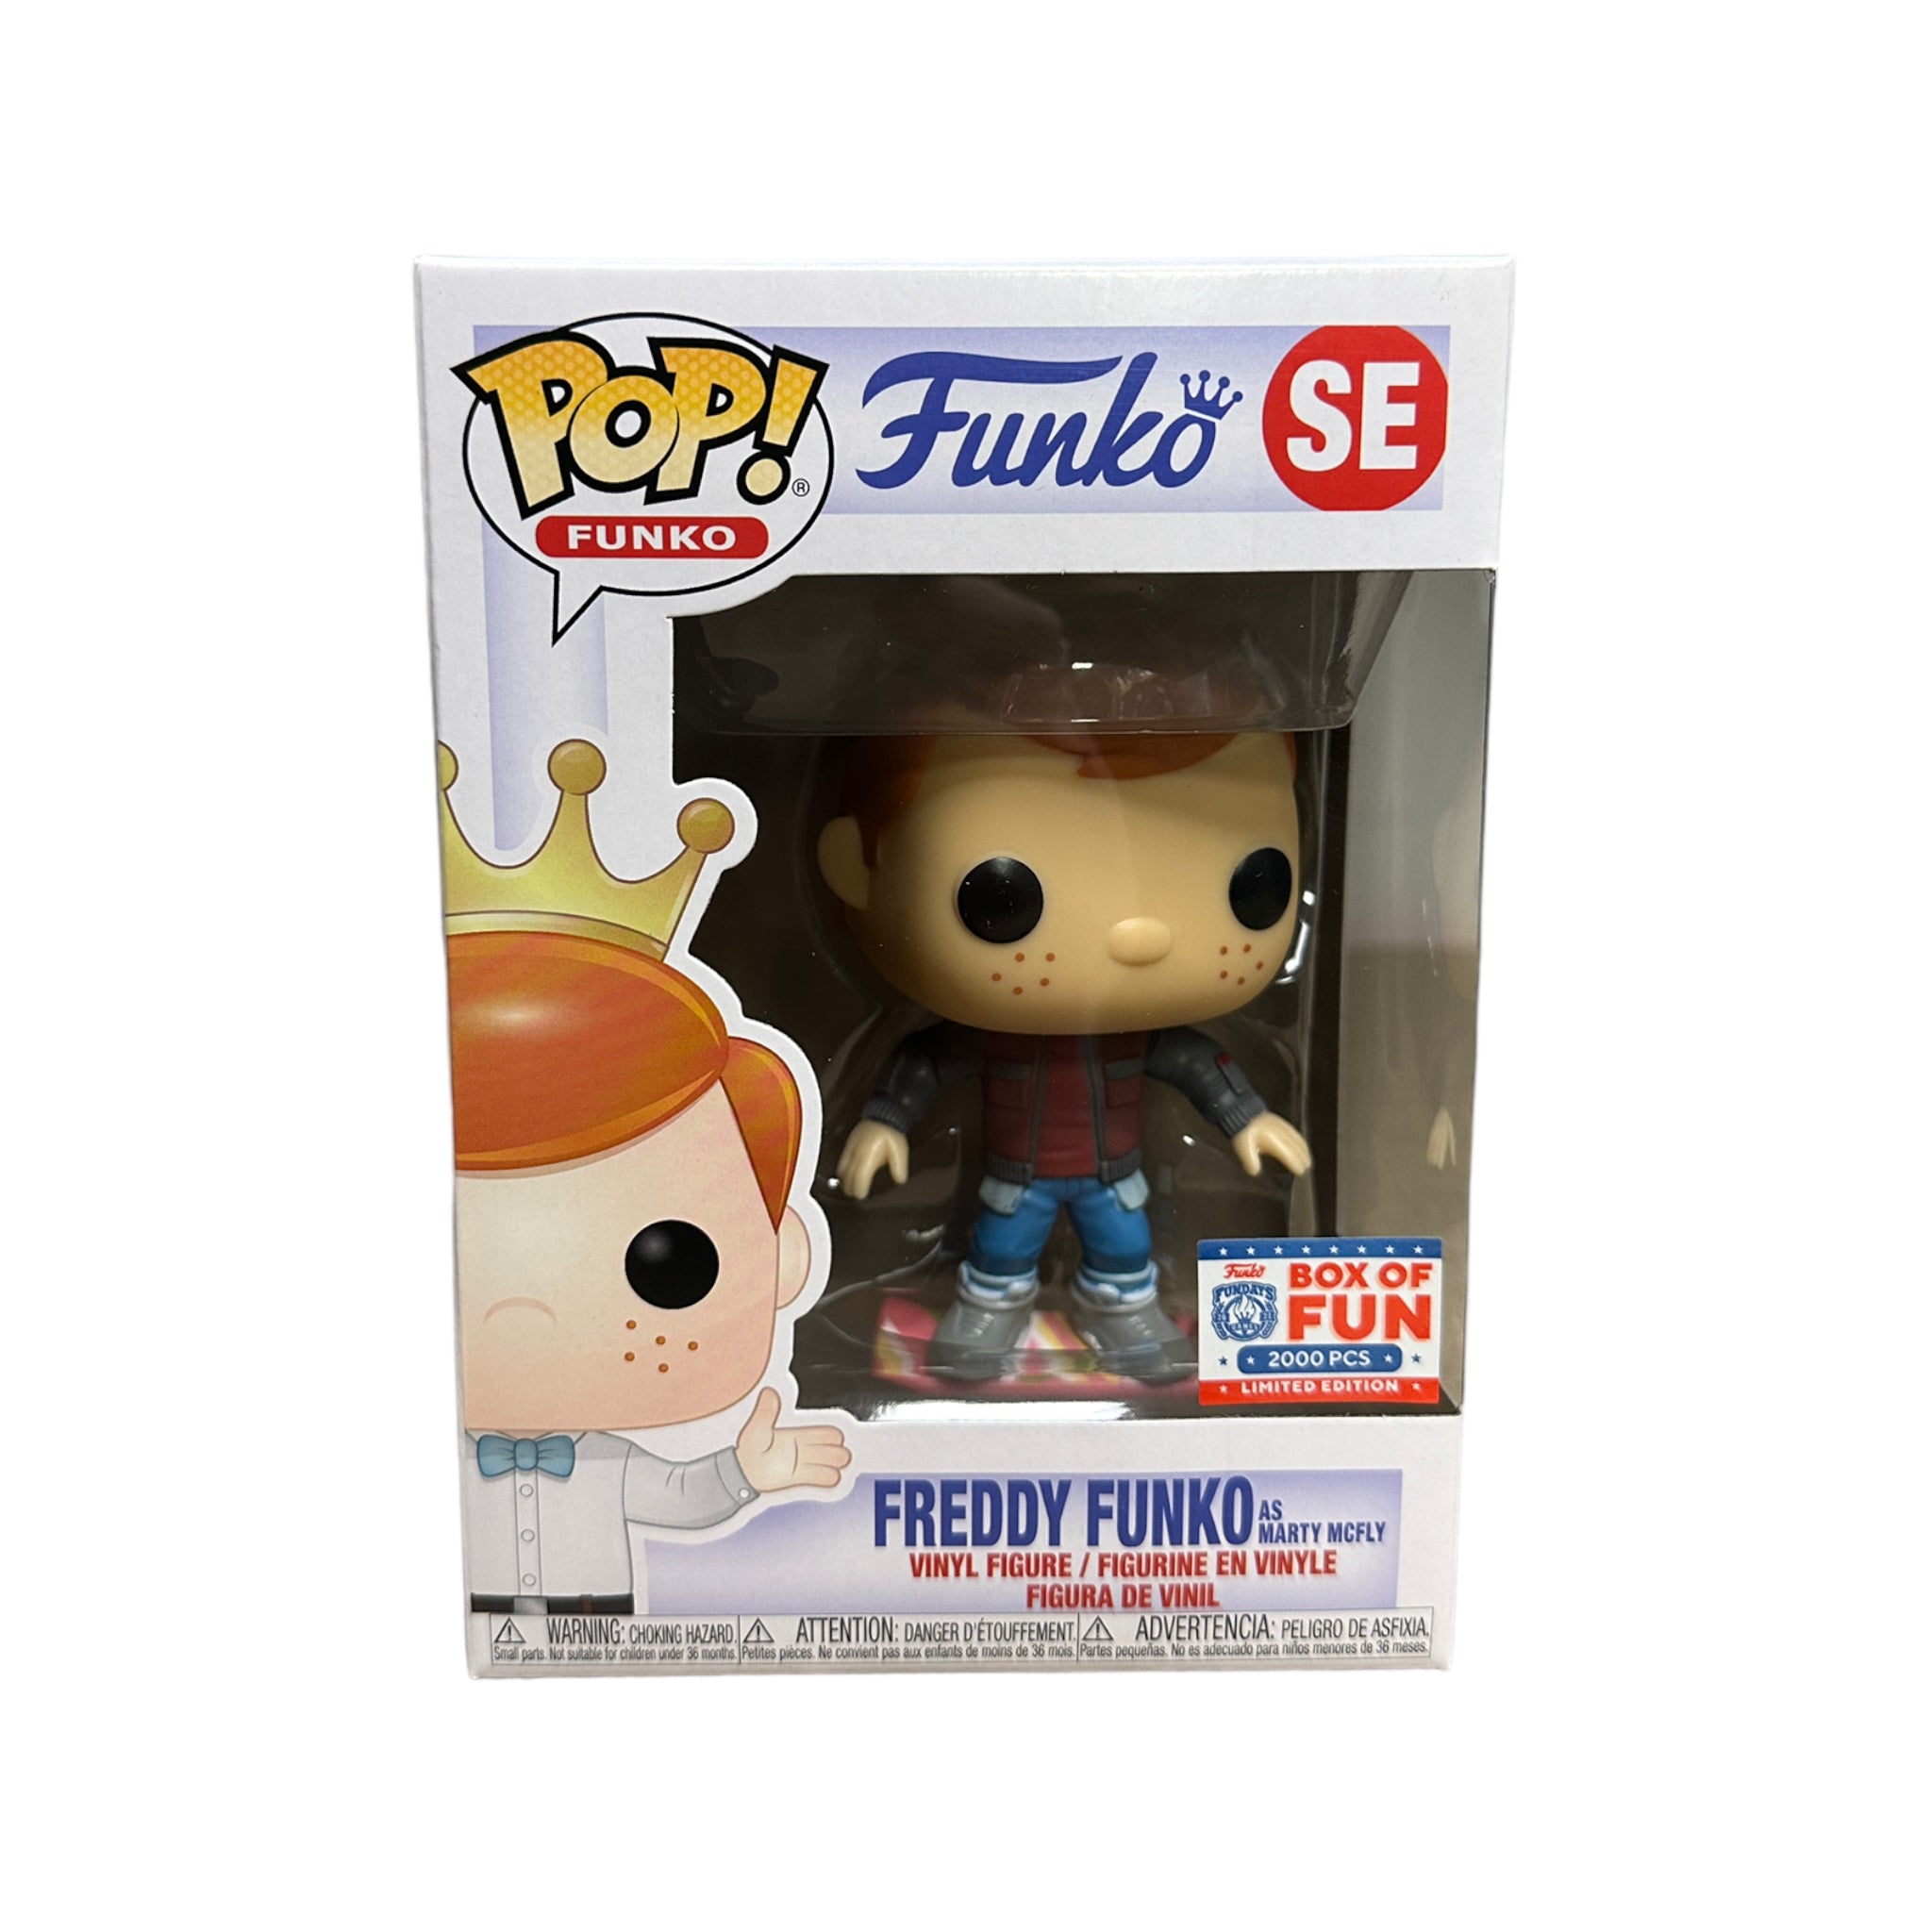 Freddy Funko as Marty McFly Funko Pop! - Back to The Future - Virtual Funkon 2021 Box of Fun Exclusive LE2000 Pcs - Condition 9.5/10